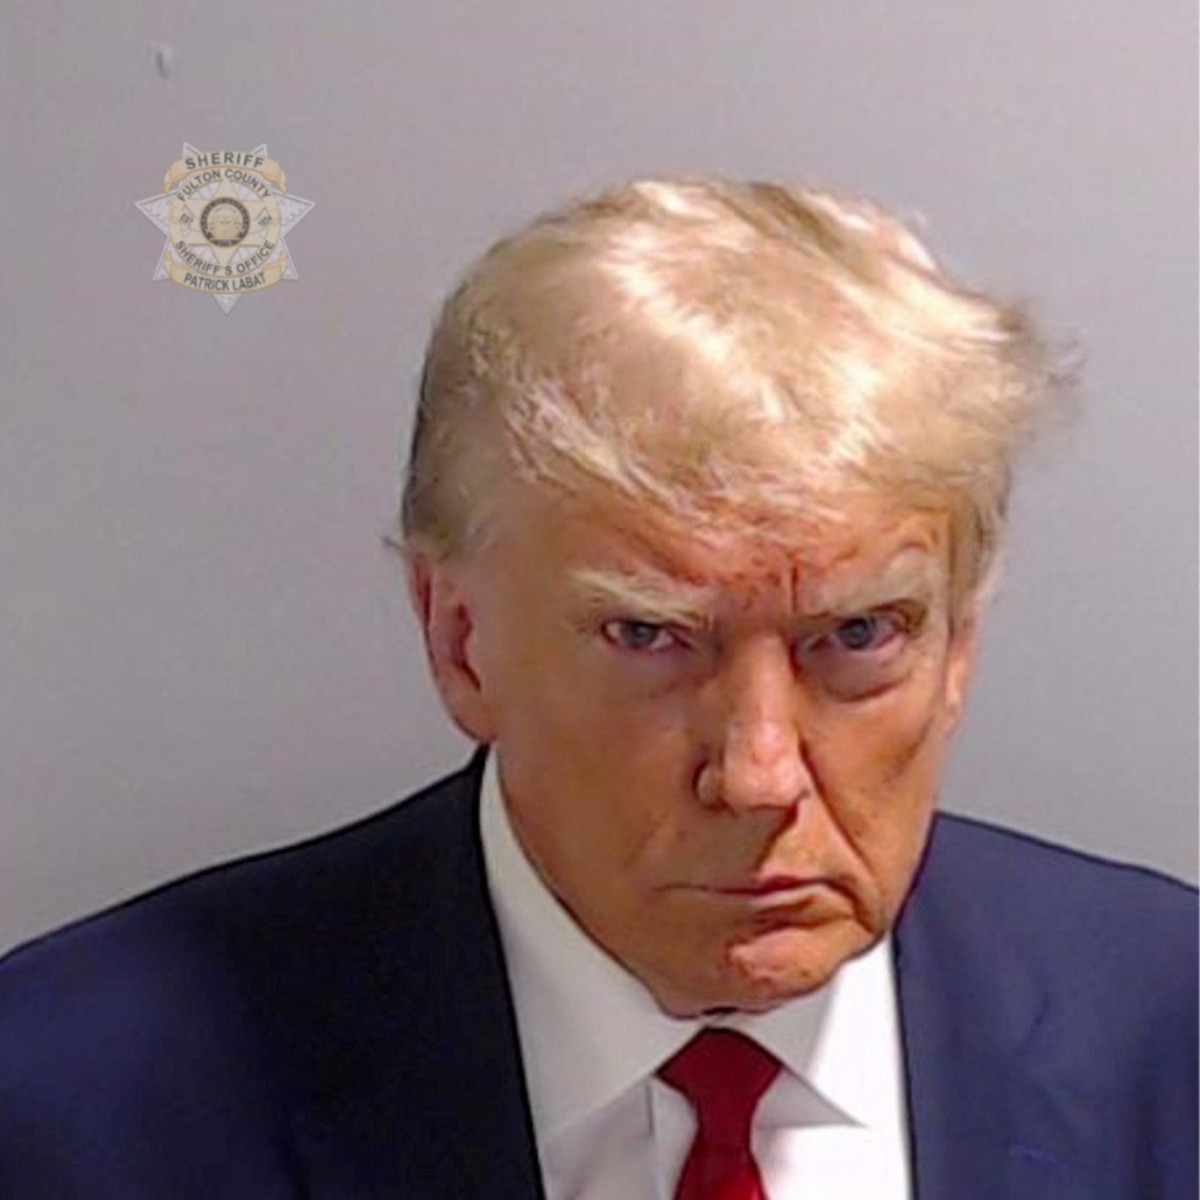 RAKAMAN gambar Trump yang dikeluarkan Pejabat Sheriff Fulton County. FOTO Fulton County Sheriff's Office via Reuters